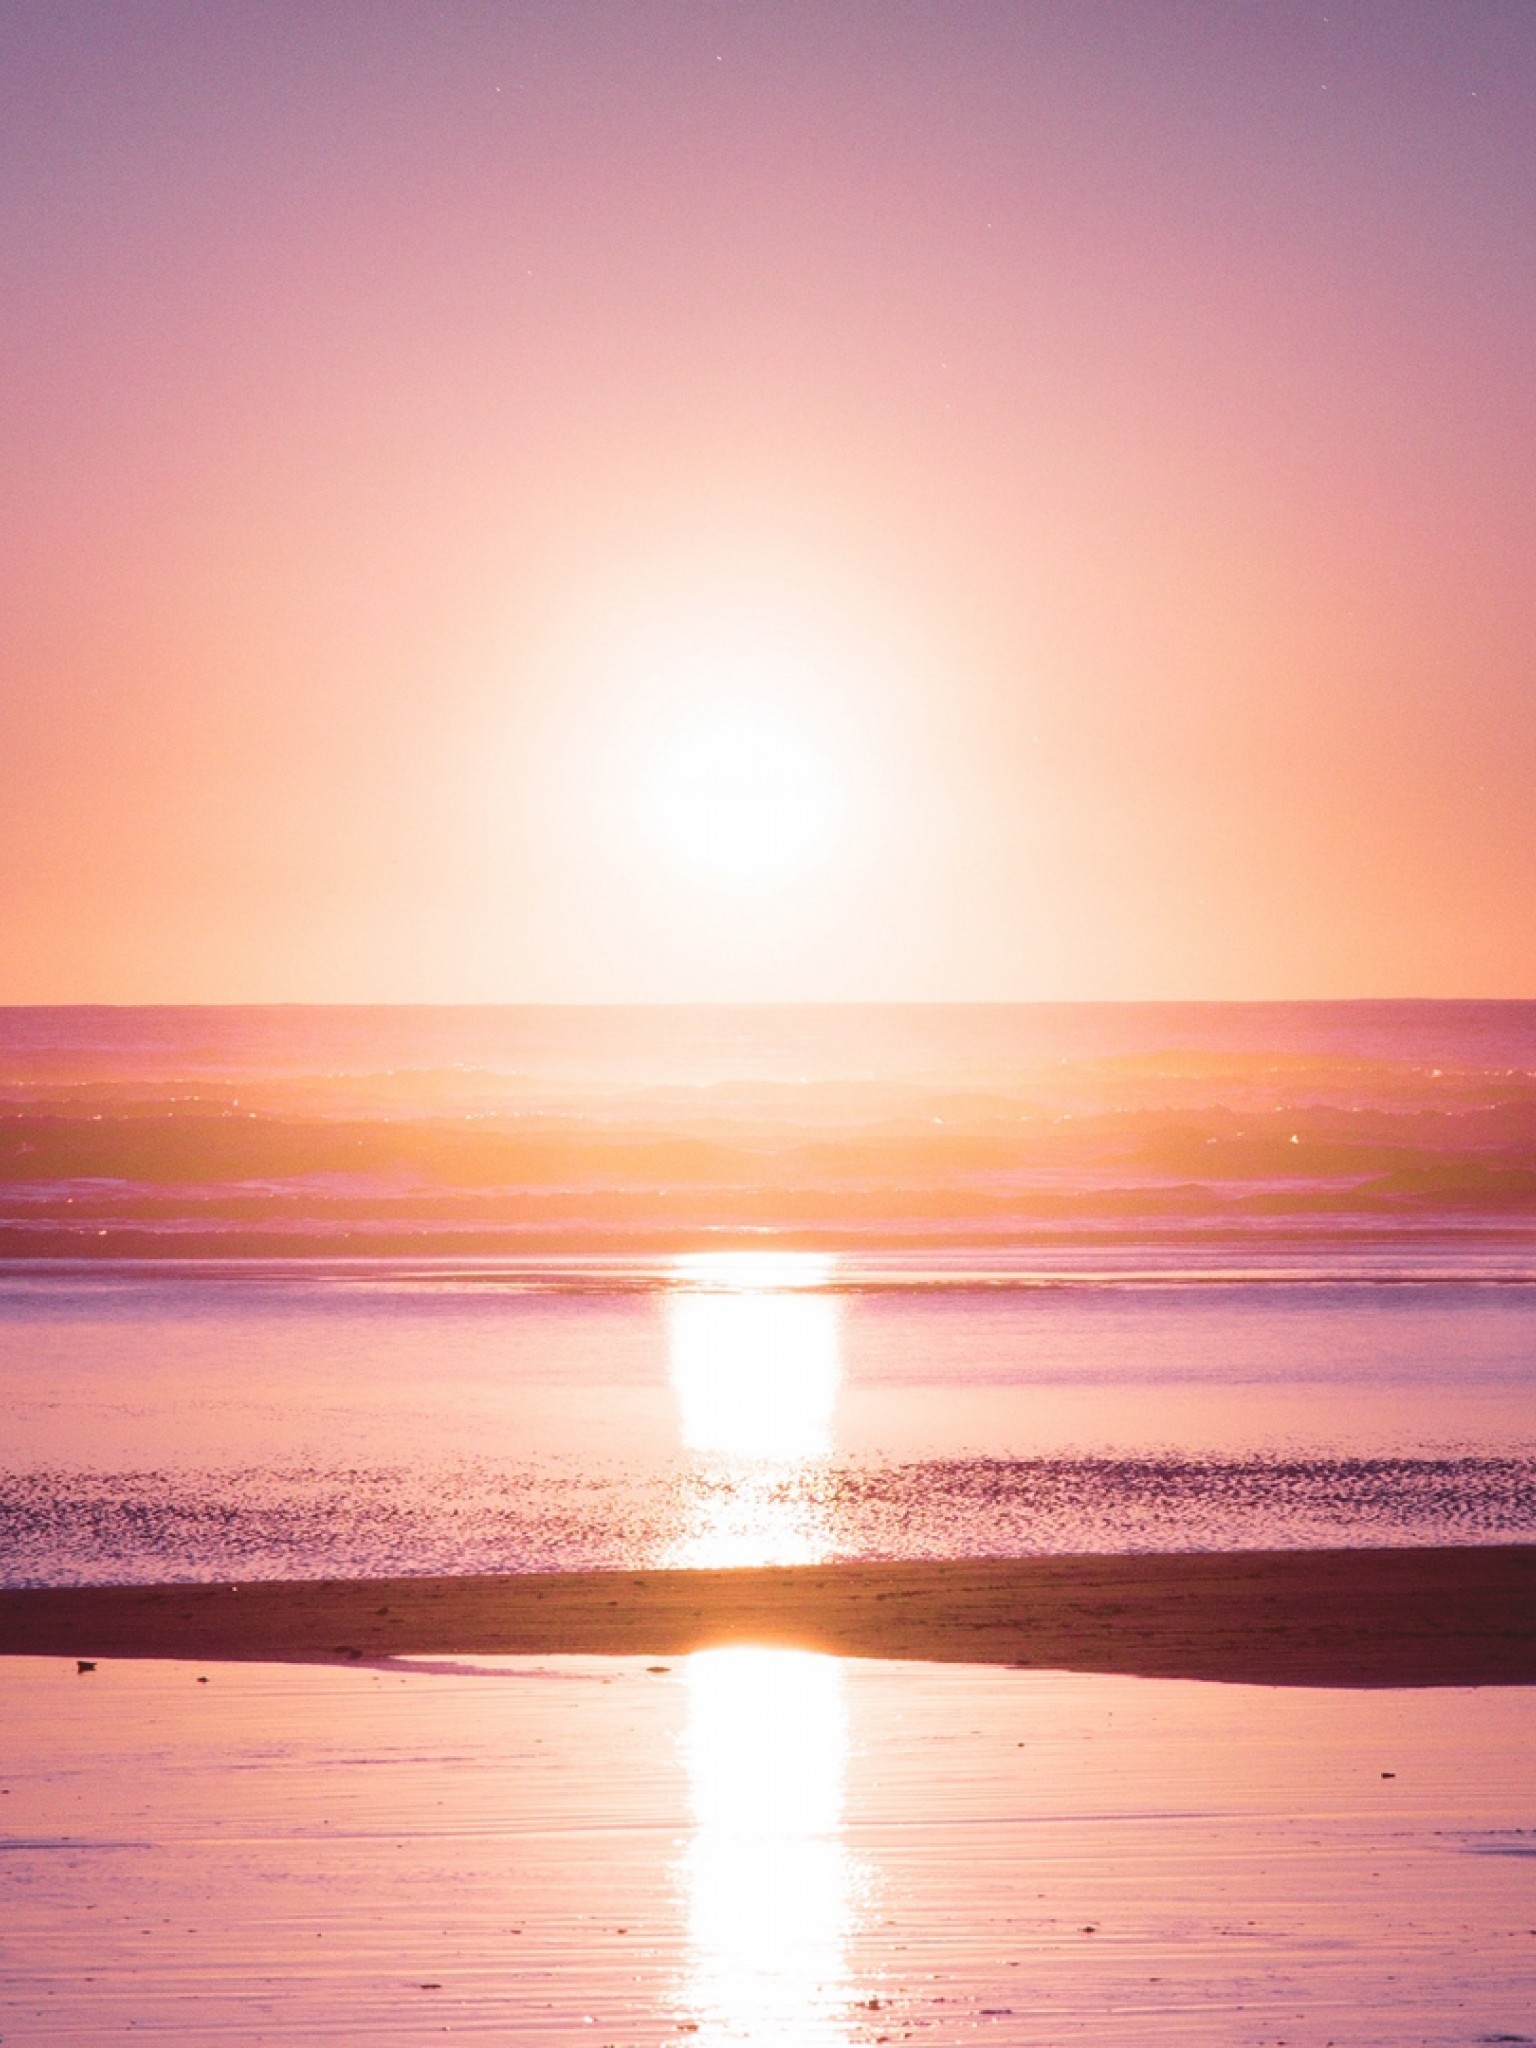 Beautiful sea sunset HD Wallpaper